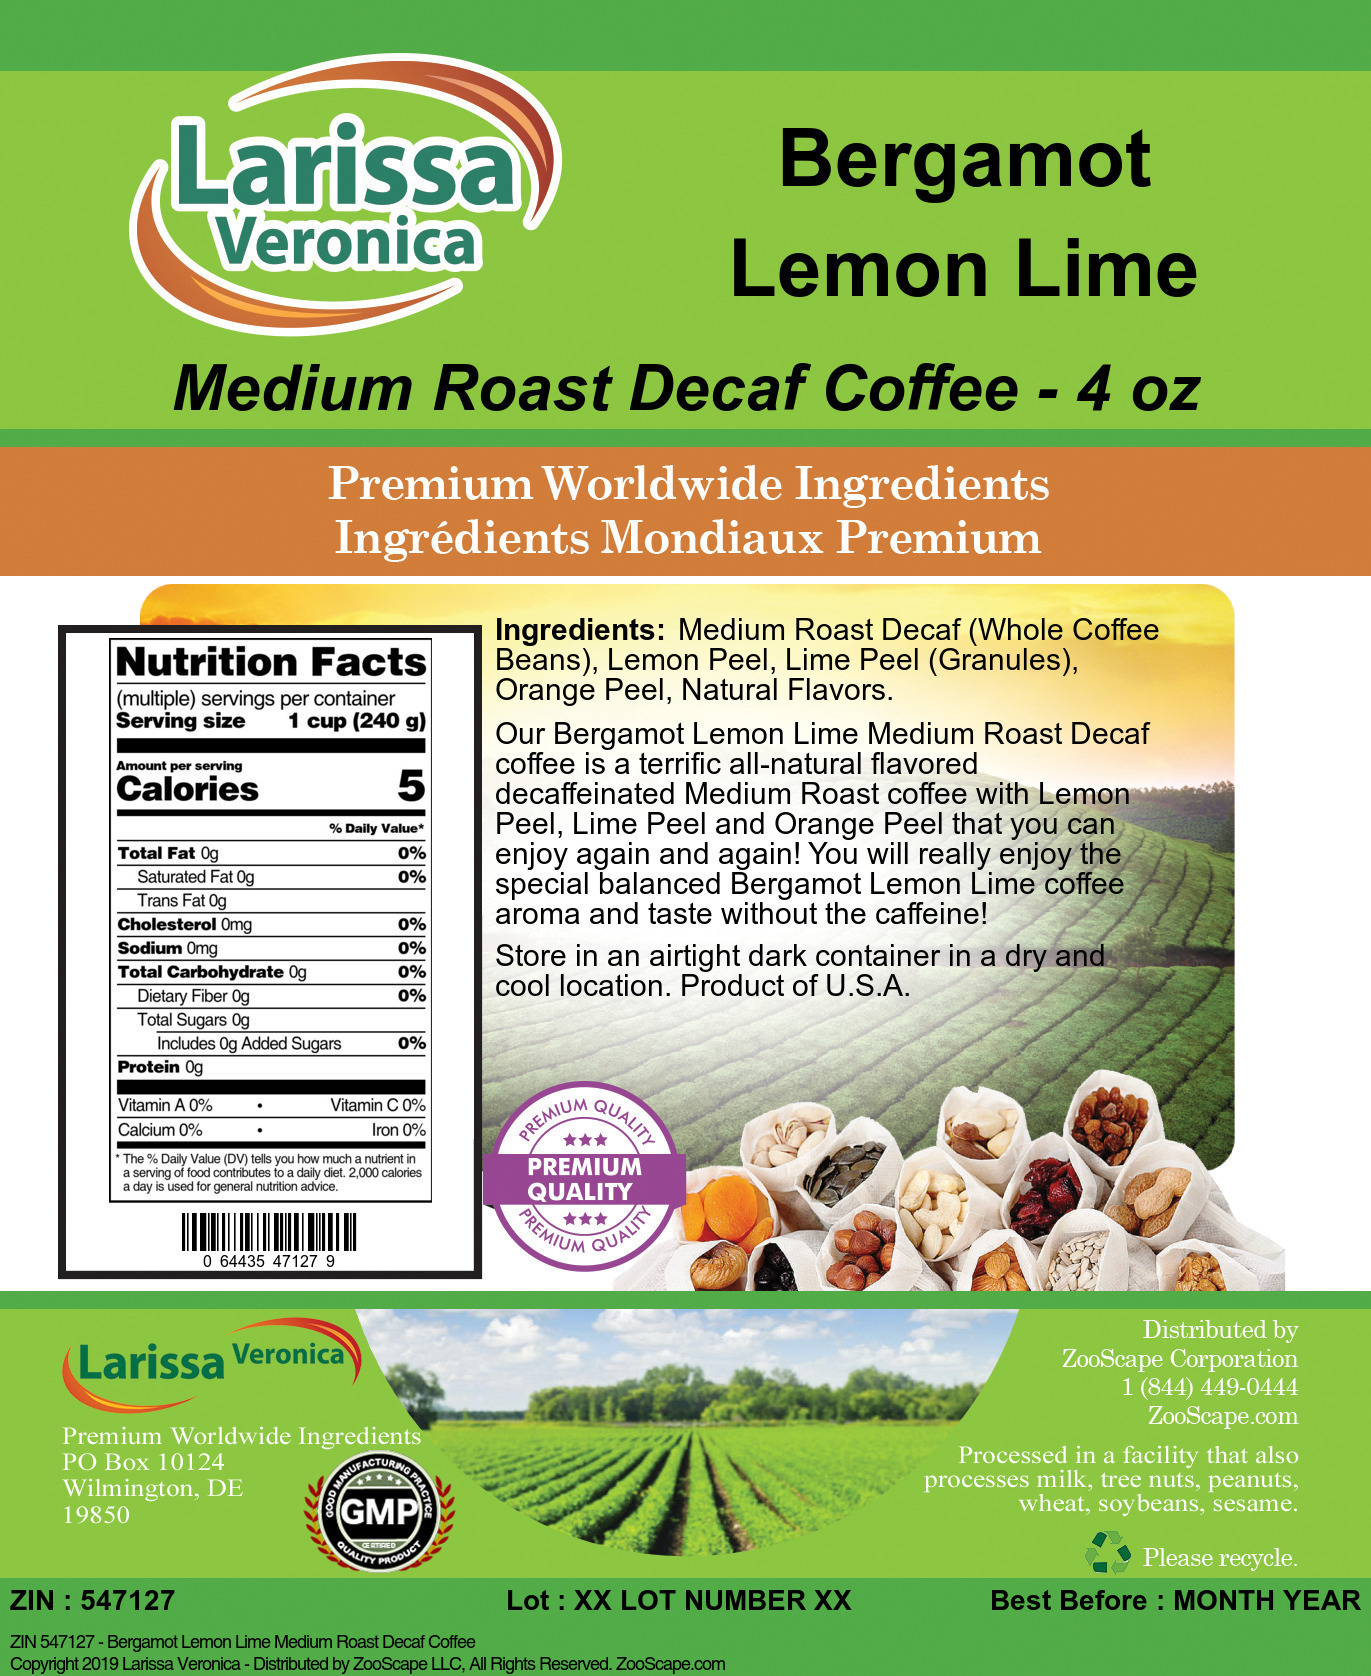 Bergamot Lemon Lime Medium Roast Decaf Coffee - Label